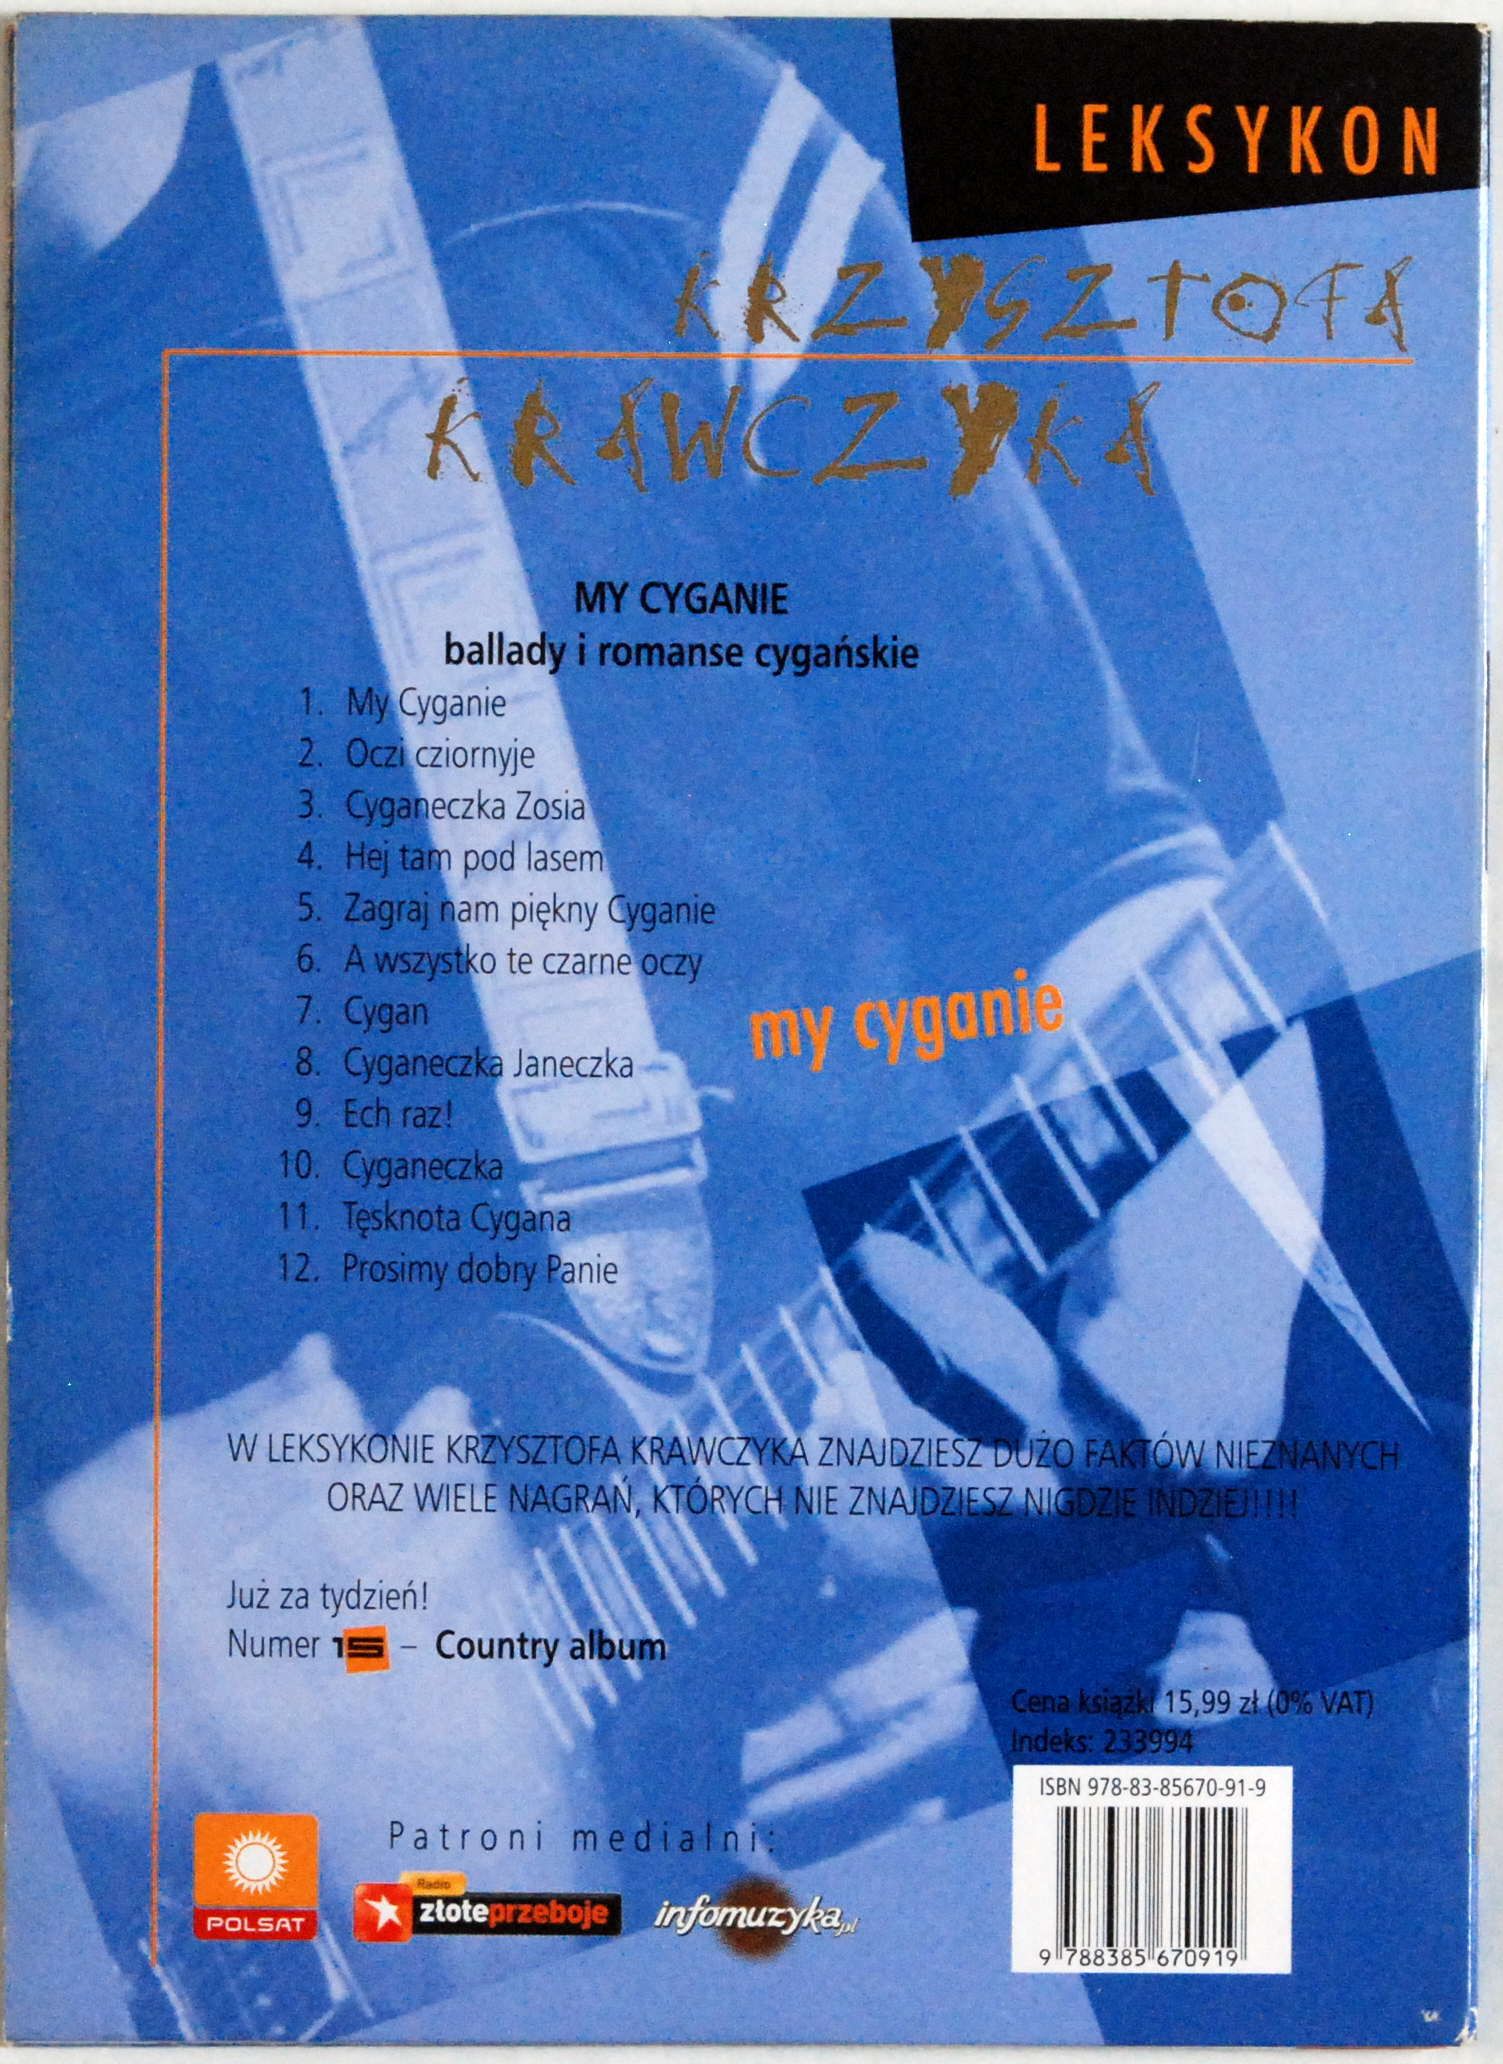 (CD) Leksykon Krzysztofa Krawczyka 14 My Cyganie